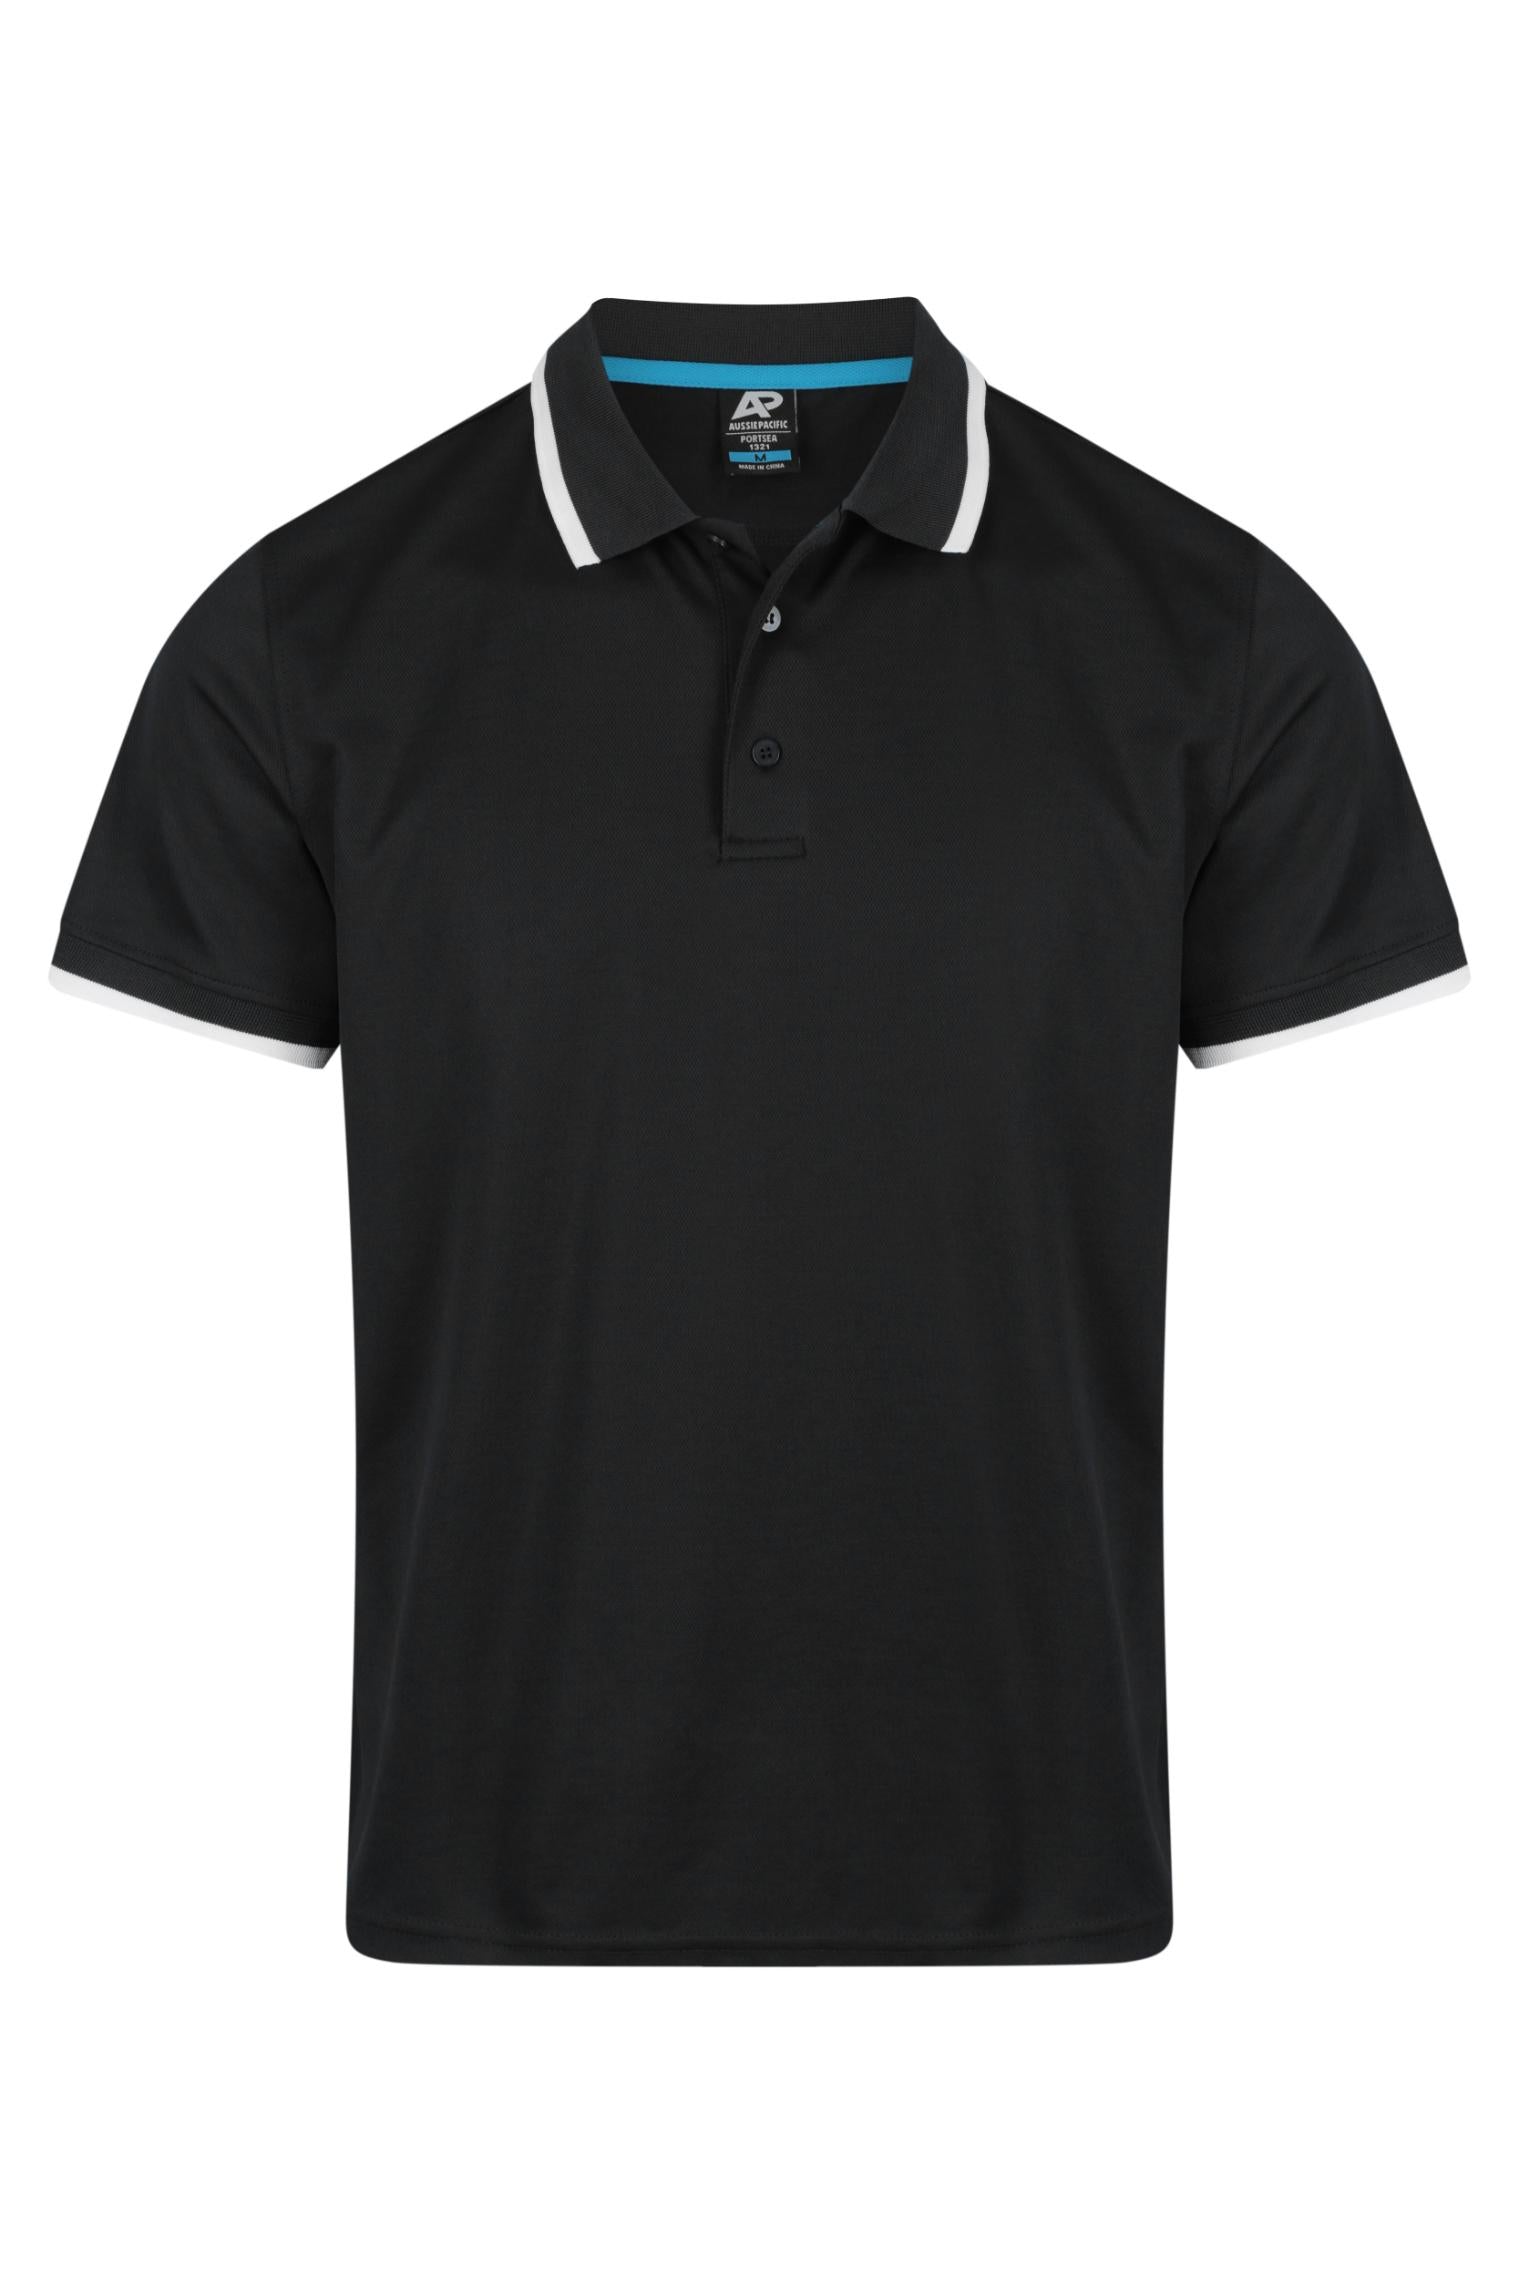 Custom Portsea Work Polo Shirts Australia - Black/White